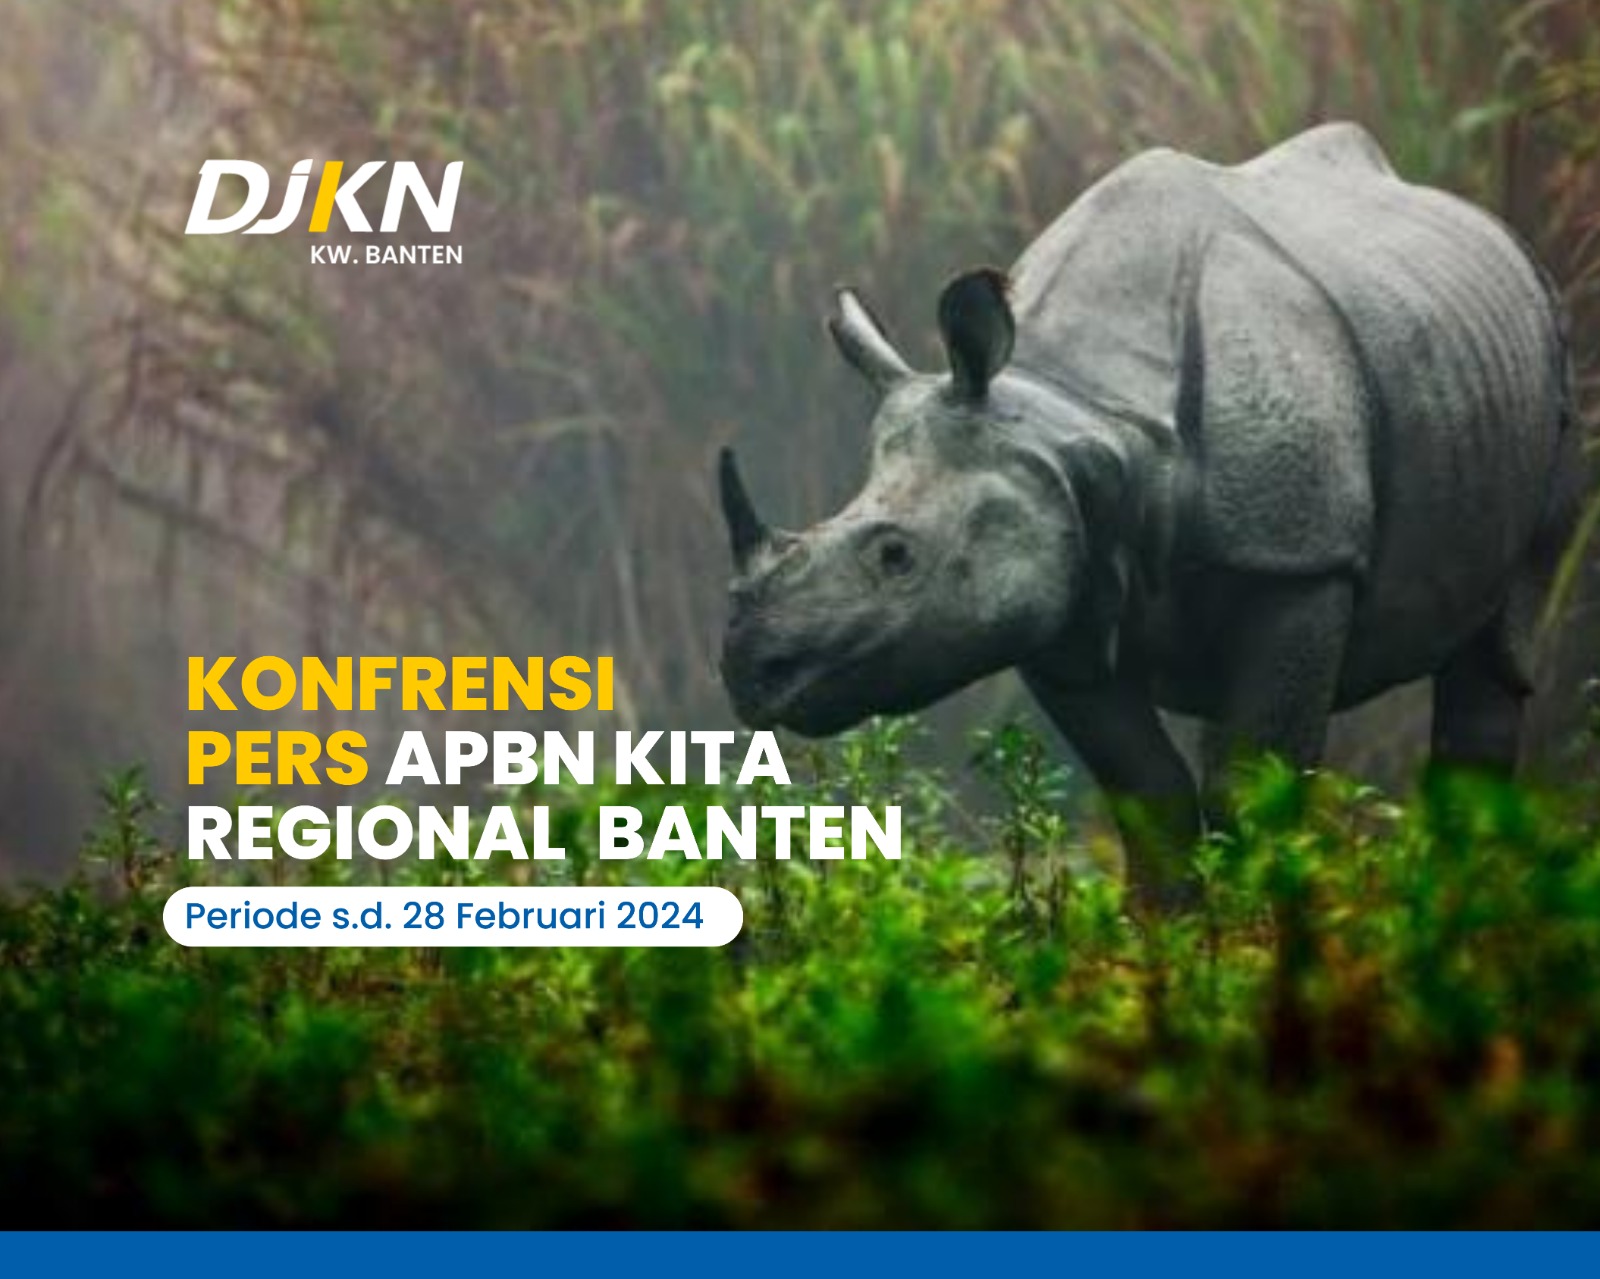 Siaran Pers APBN Kita Regional Banten s.d. Februari 2024